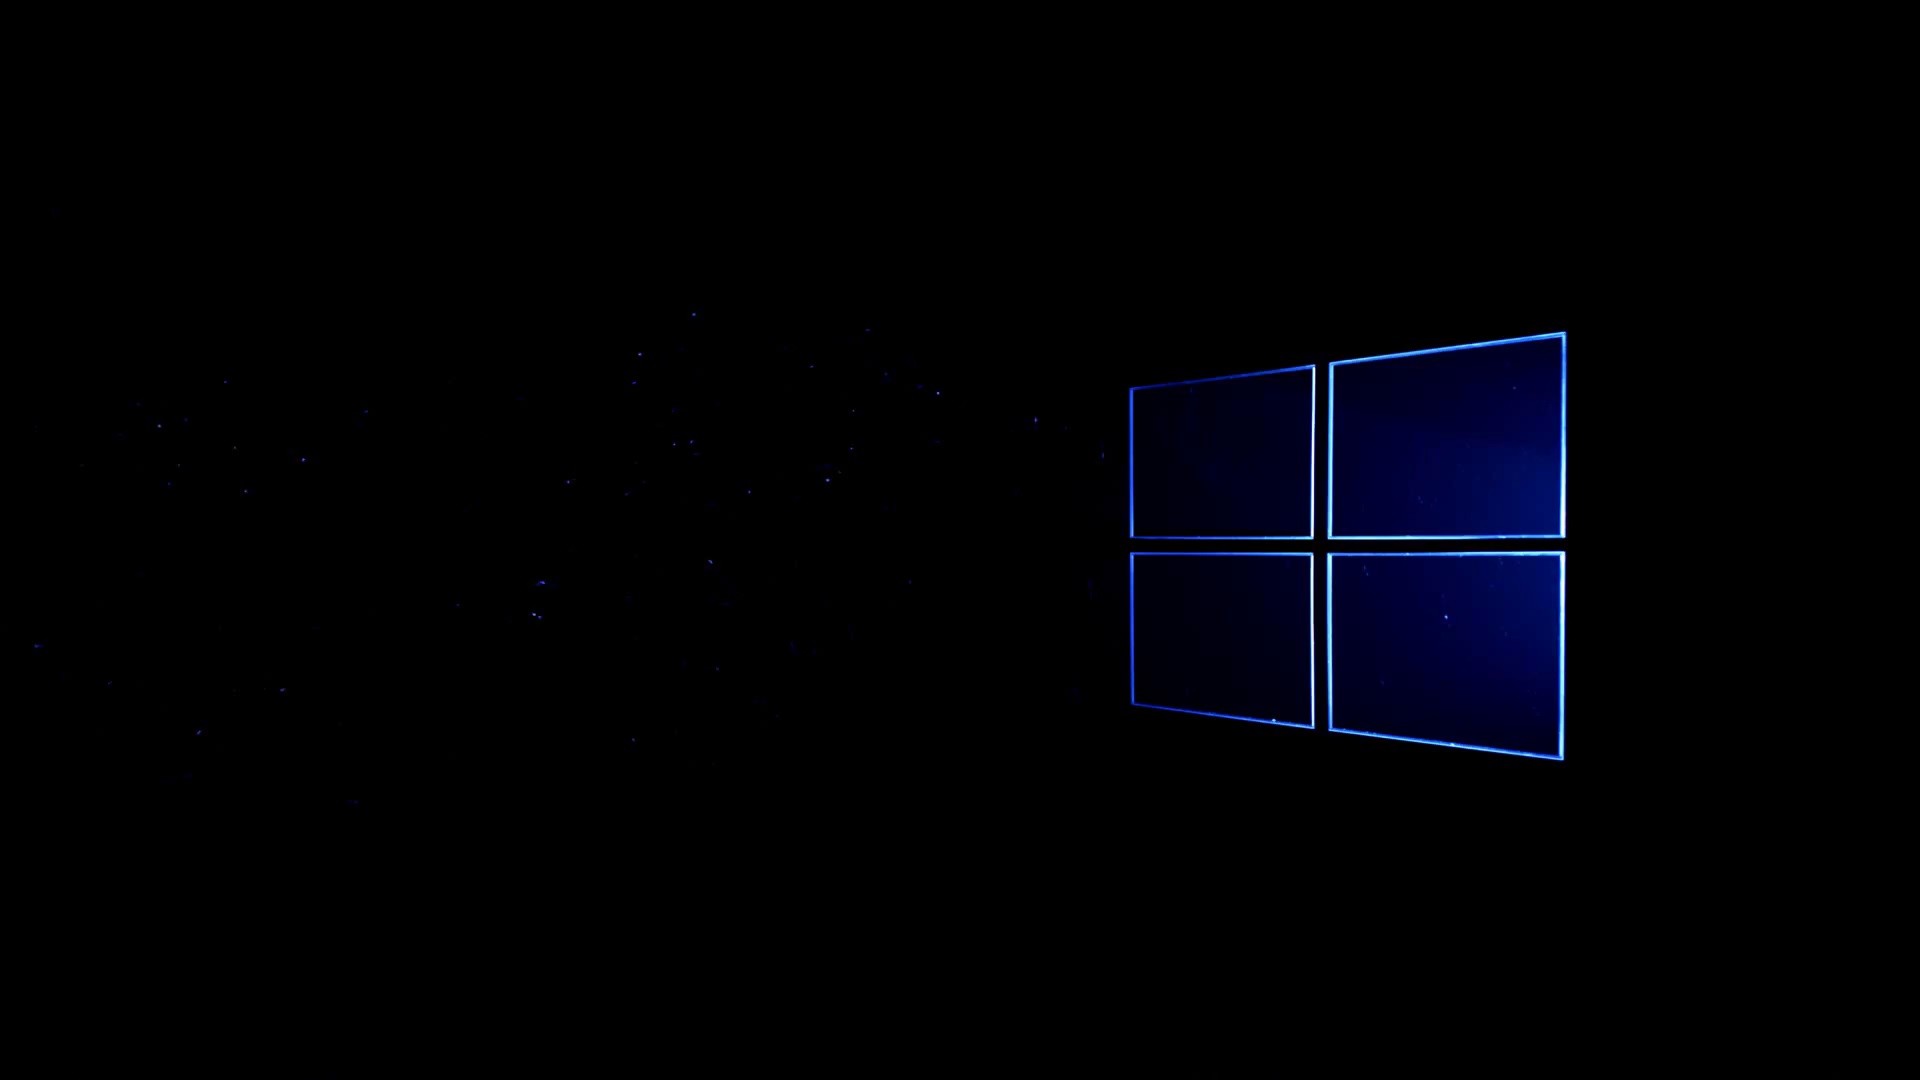 Windows 10 chính thức đã trở thành một nền tảng đáng tin cậy cho các bộ máy tính cá nhân. Và bạn đã sẵn sàng để đón nhận những hình nền Windows 10 chính thức mới nhất? Hãy trang trí màn hình của bạn với những hình nền đẹp nhất từ Microsoft và thưởng thức sự thay đổi tuyệt vời trong giao diện của máy tính.